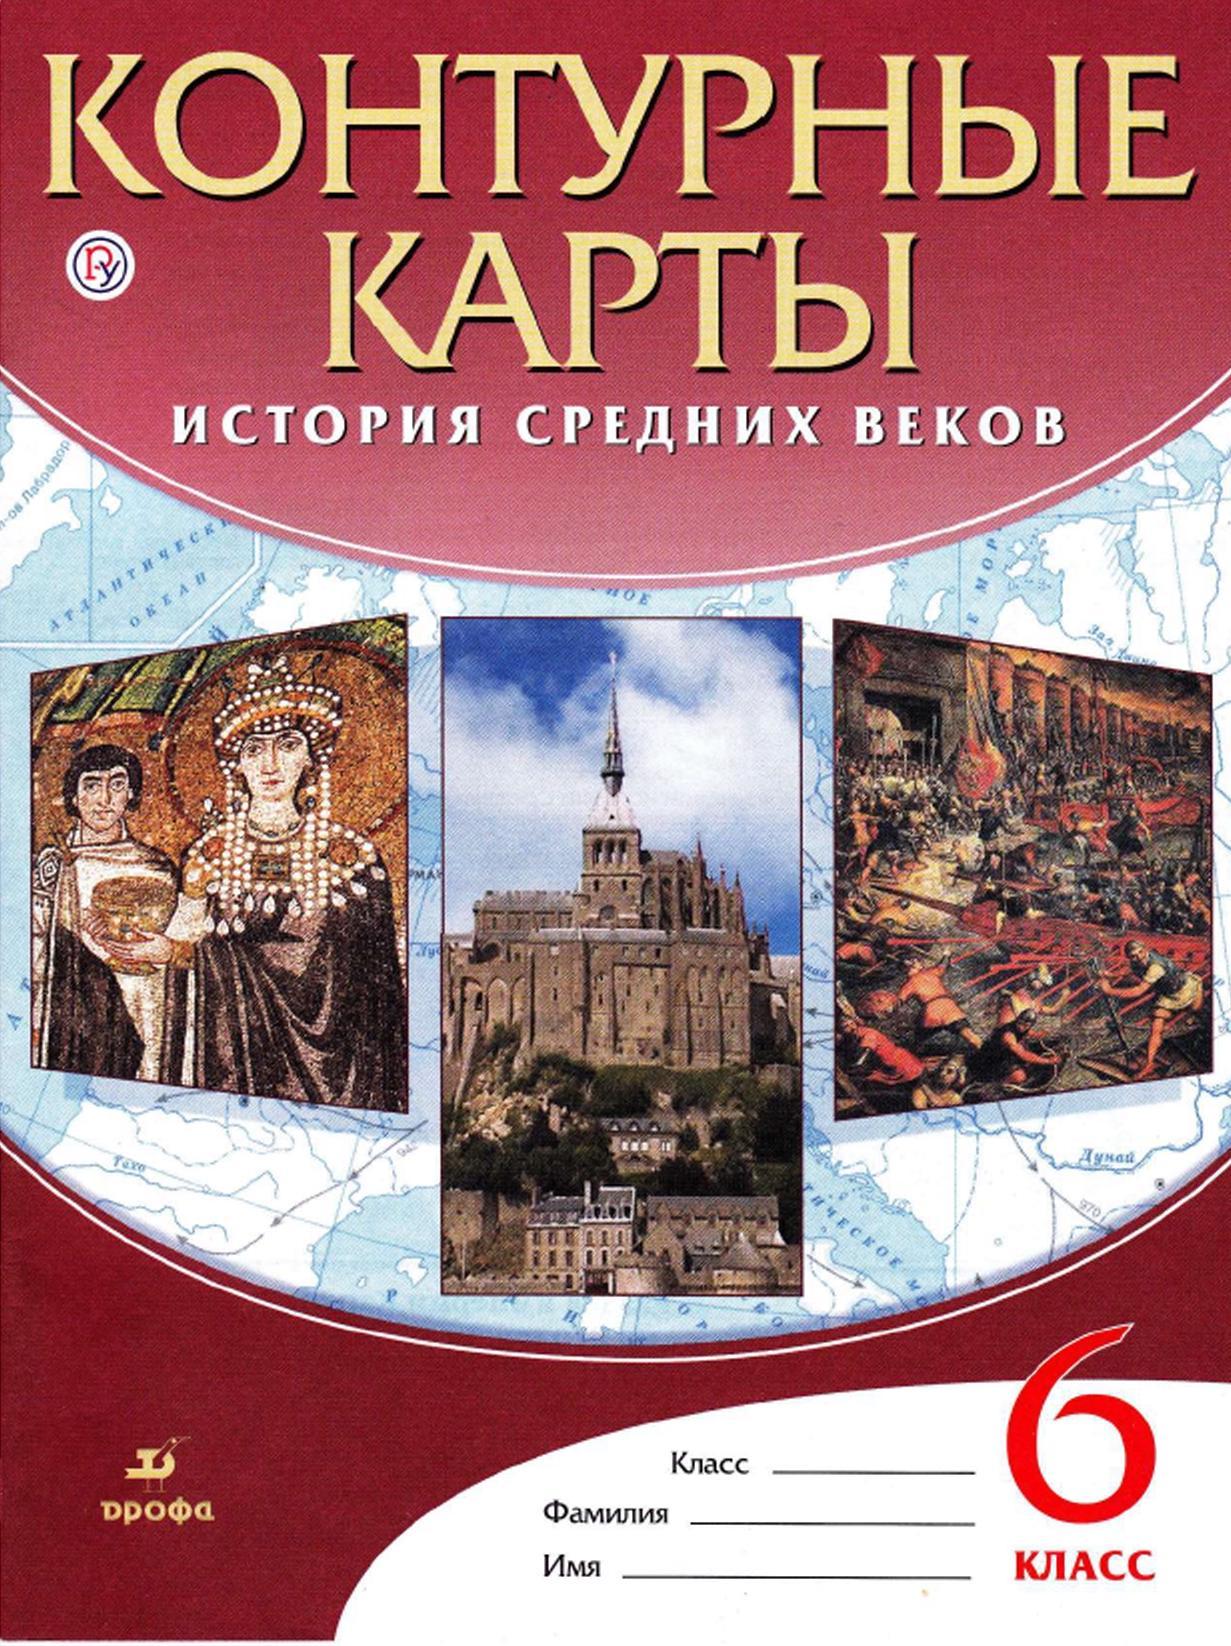 История средних веков, Контурные карты, 6 класс, Курбский Н.А., 2020